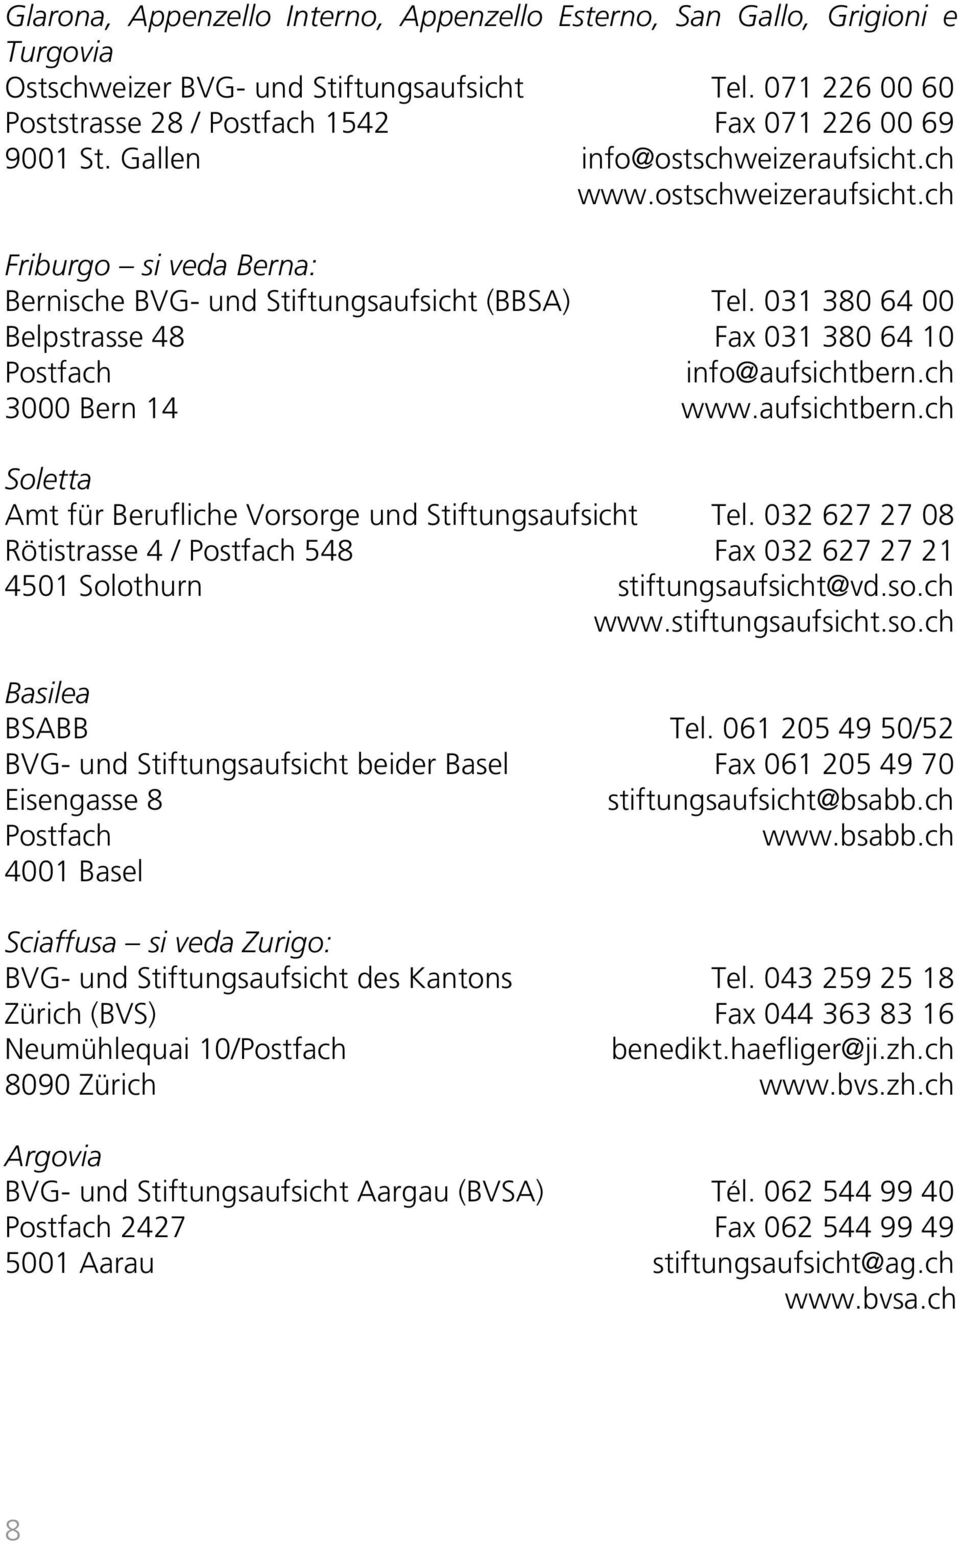 031 380 64 00 Belpstrasse 48 Fax 031 380 64 10 Postfach info@aufsichtbern.ch 3000 Bern 14 www.aufsichtbern.ch Soletta Amt für Berufliche Vorsorge und Stiftungsaufsicht Tel.